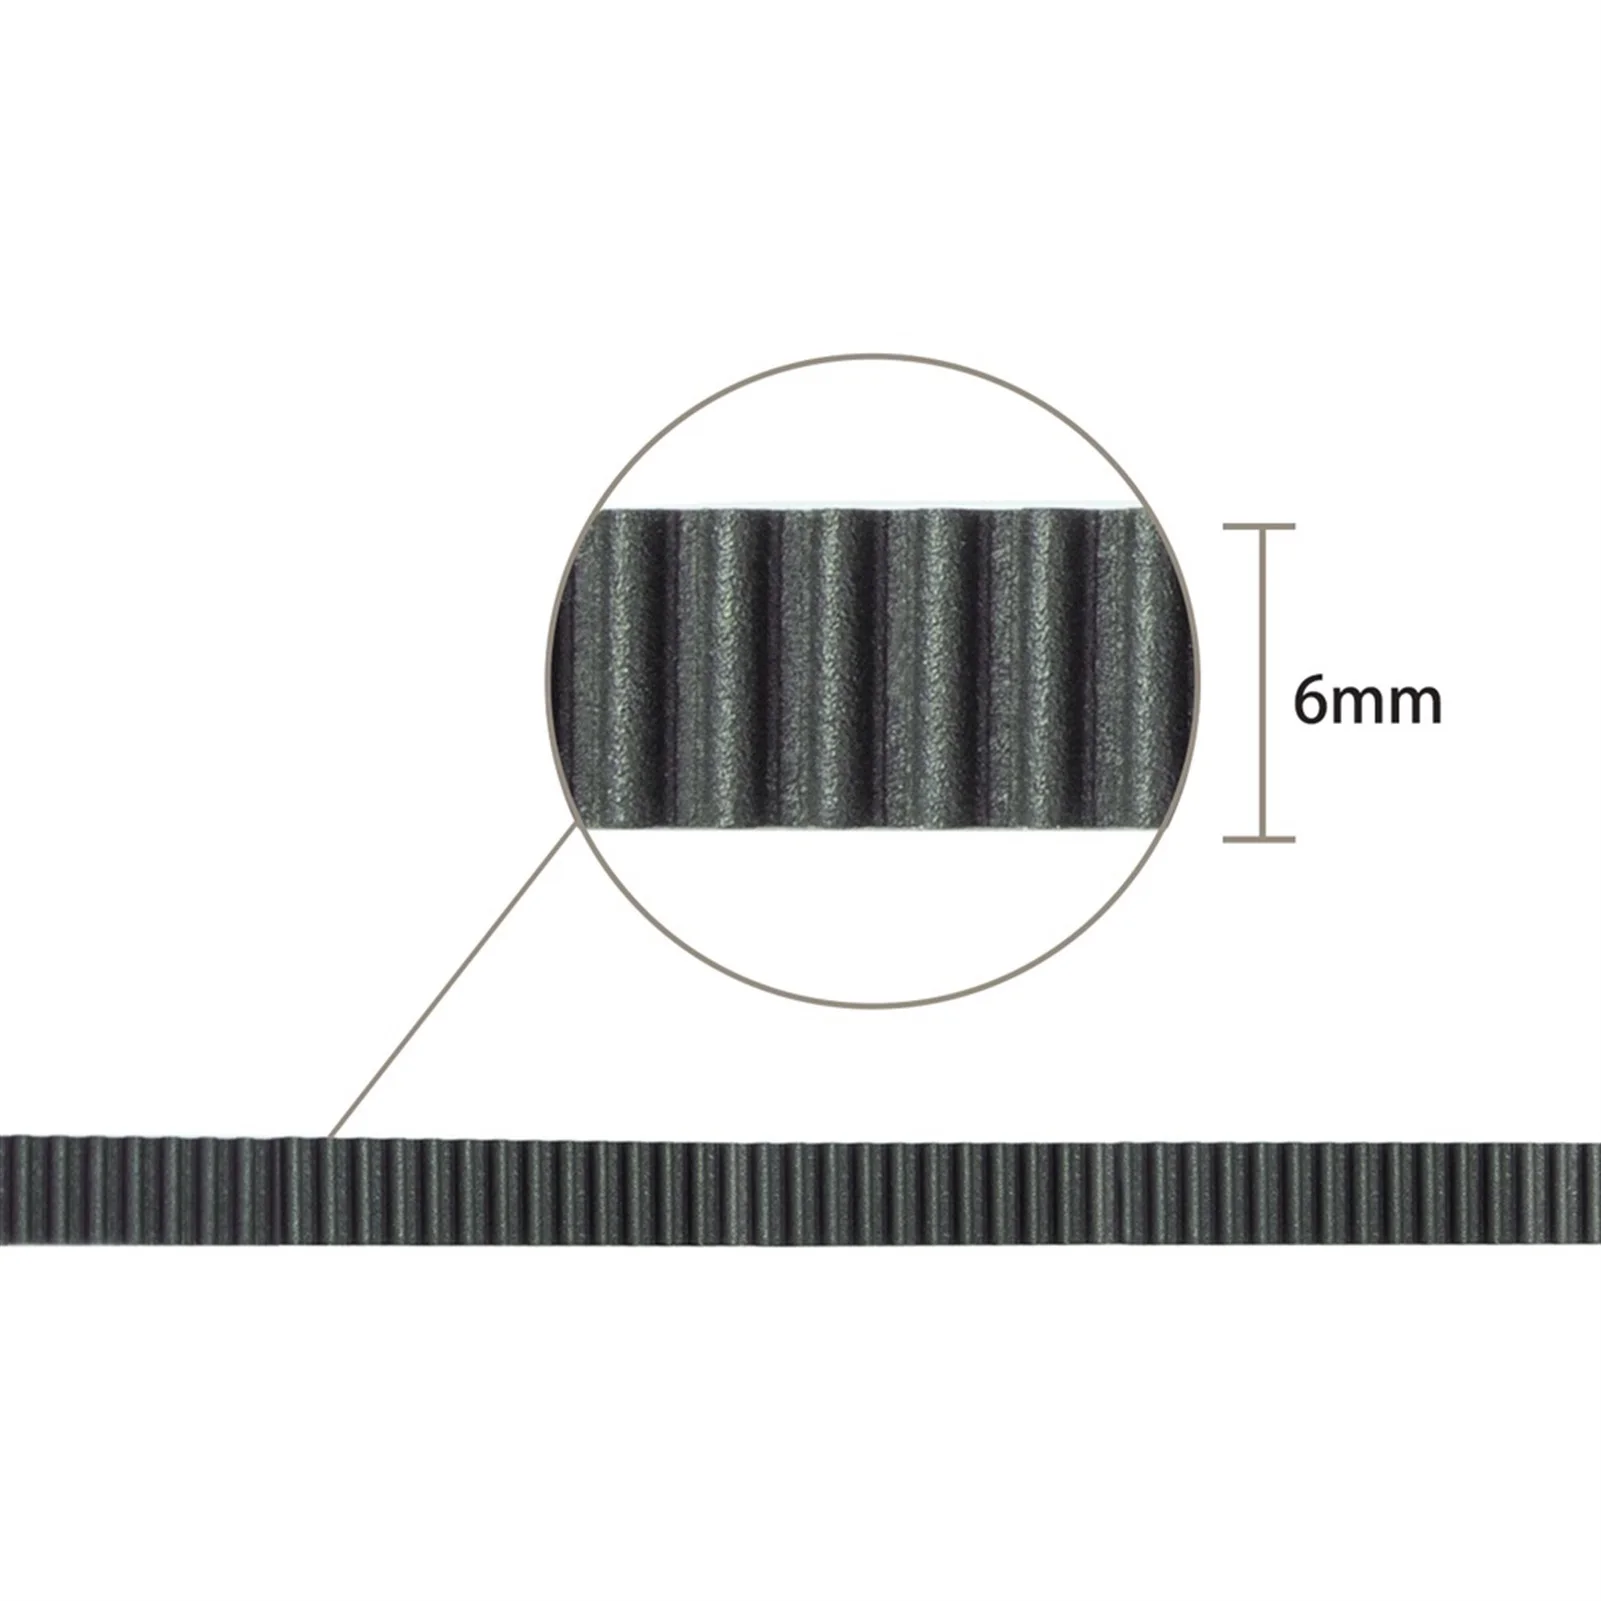 3D Printer Kits 5meter Belt 2GT-6mm, Rubber, Opening GT2-6mm Timing Belt For 6mm, Belt Kit DIY 3D Printer Parts images - 6